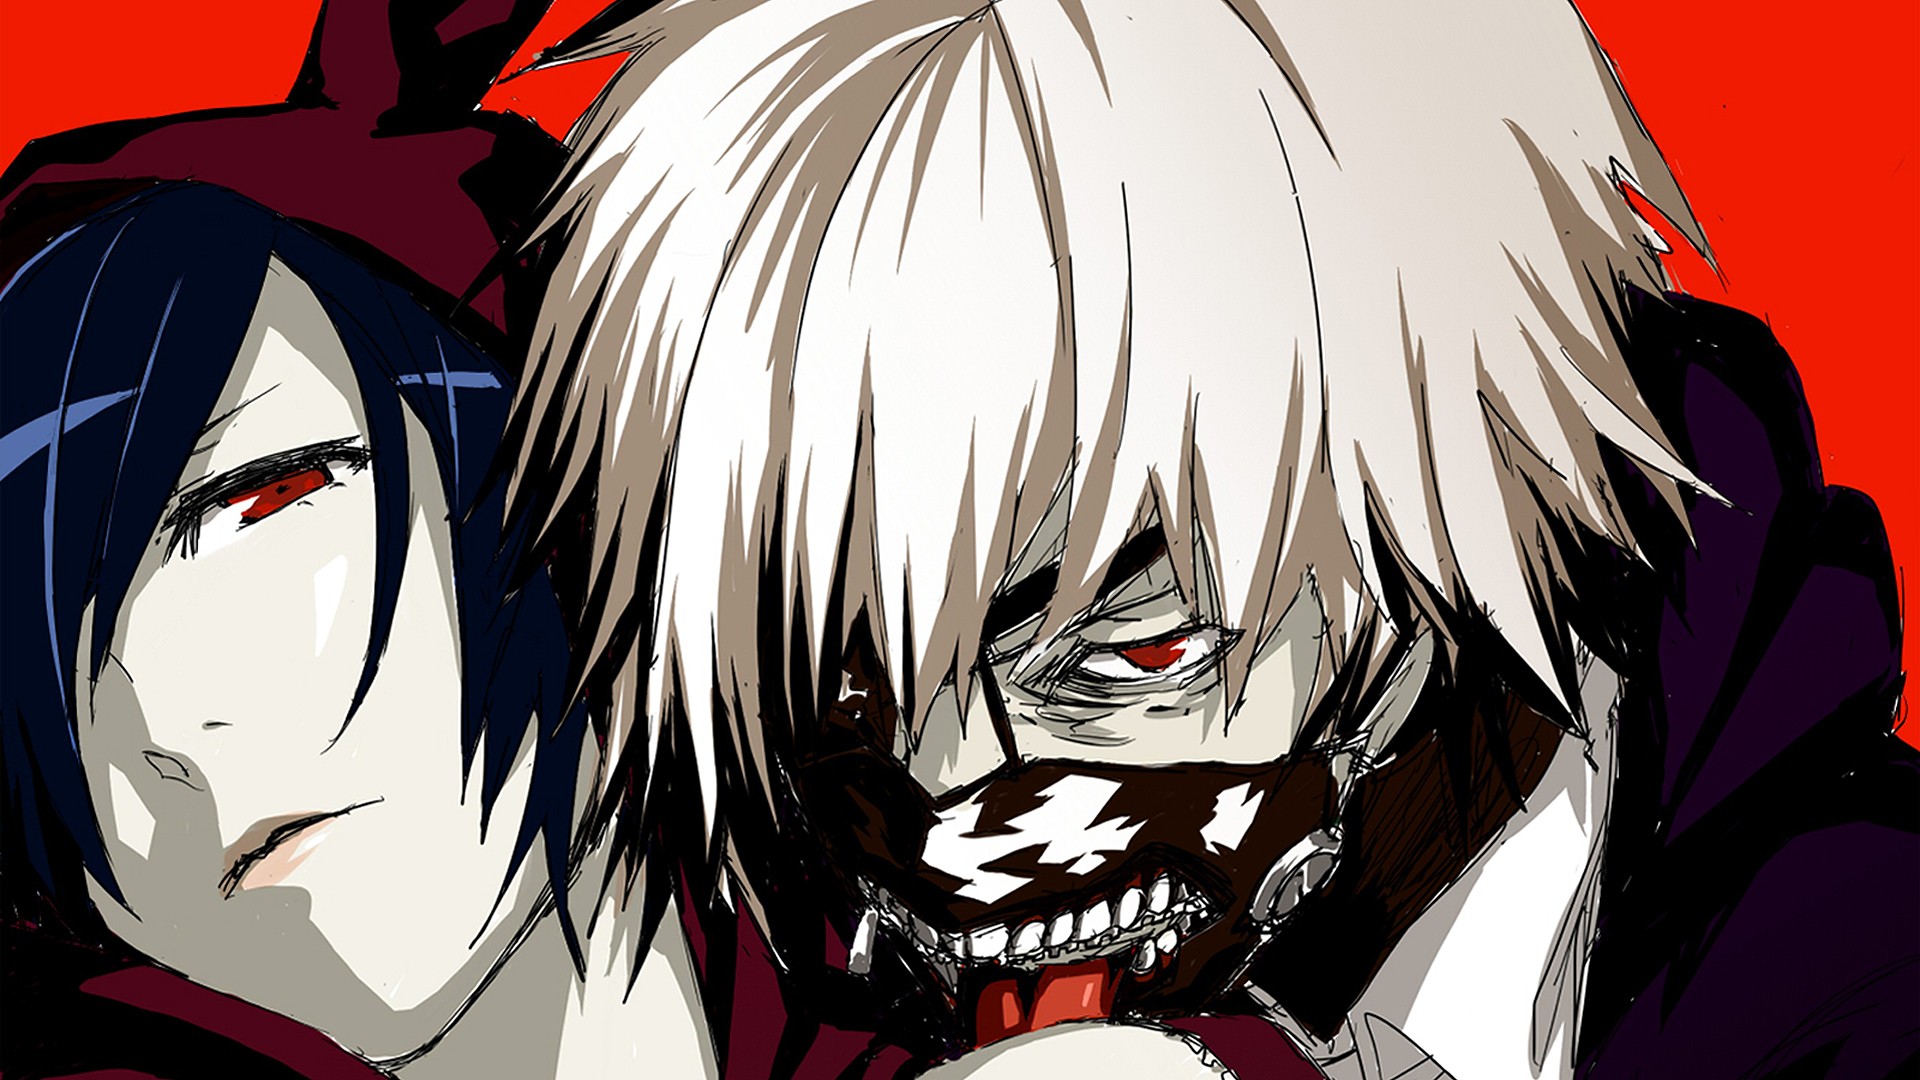 Anime 1920x1080 Tokyo Ghoul Kaneki Ken Kirishima Touka anime mask face closeup red eyes red background